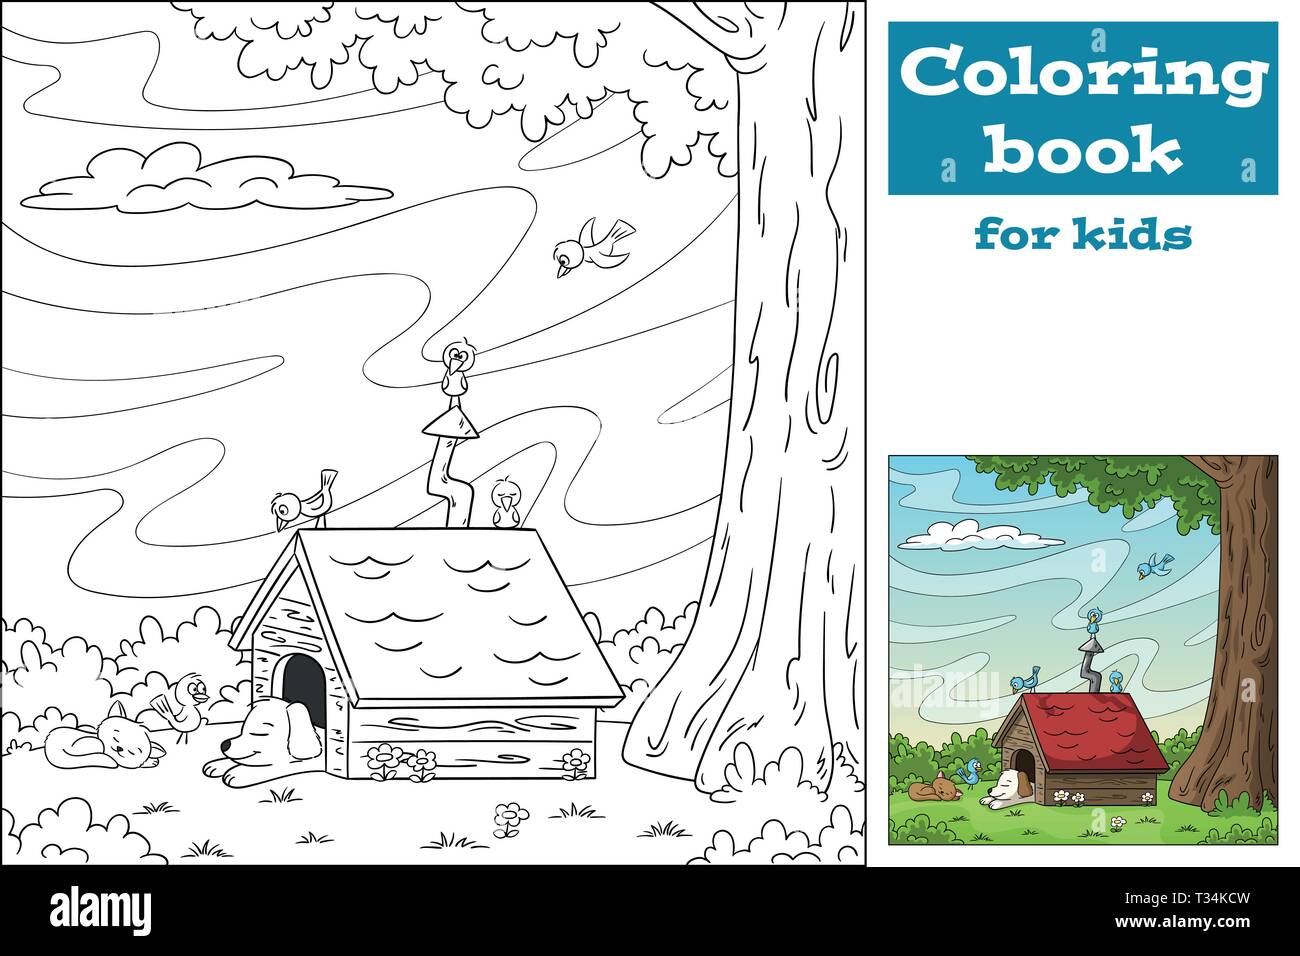 Libro para colorear para niños fotografías e imágenes de alta resolución -  Alamy